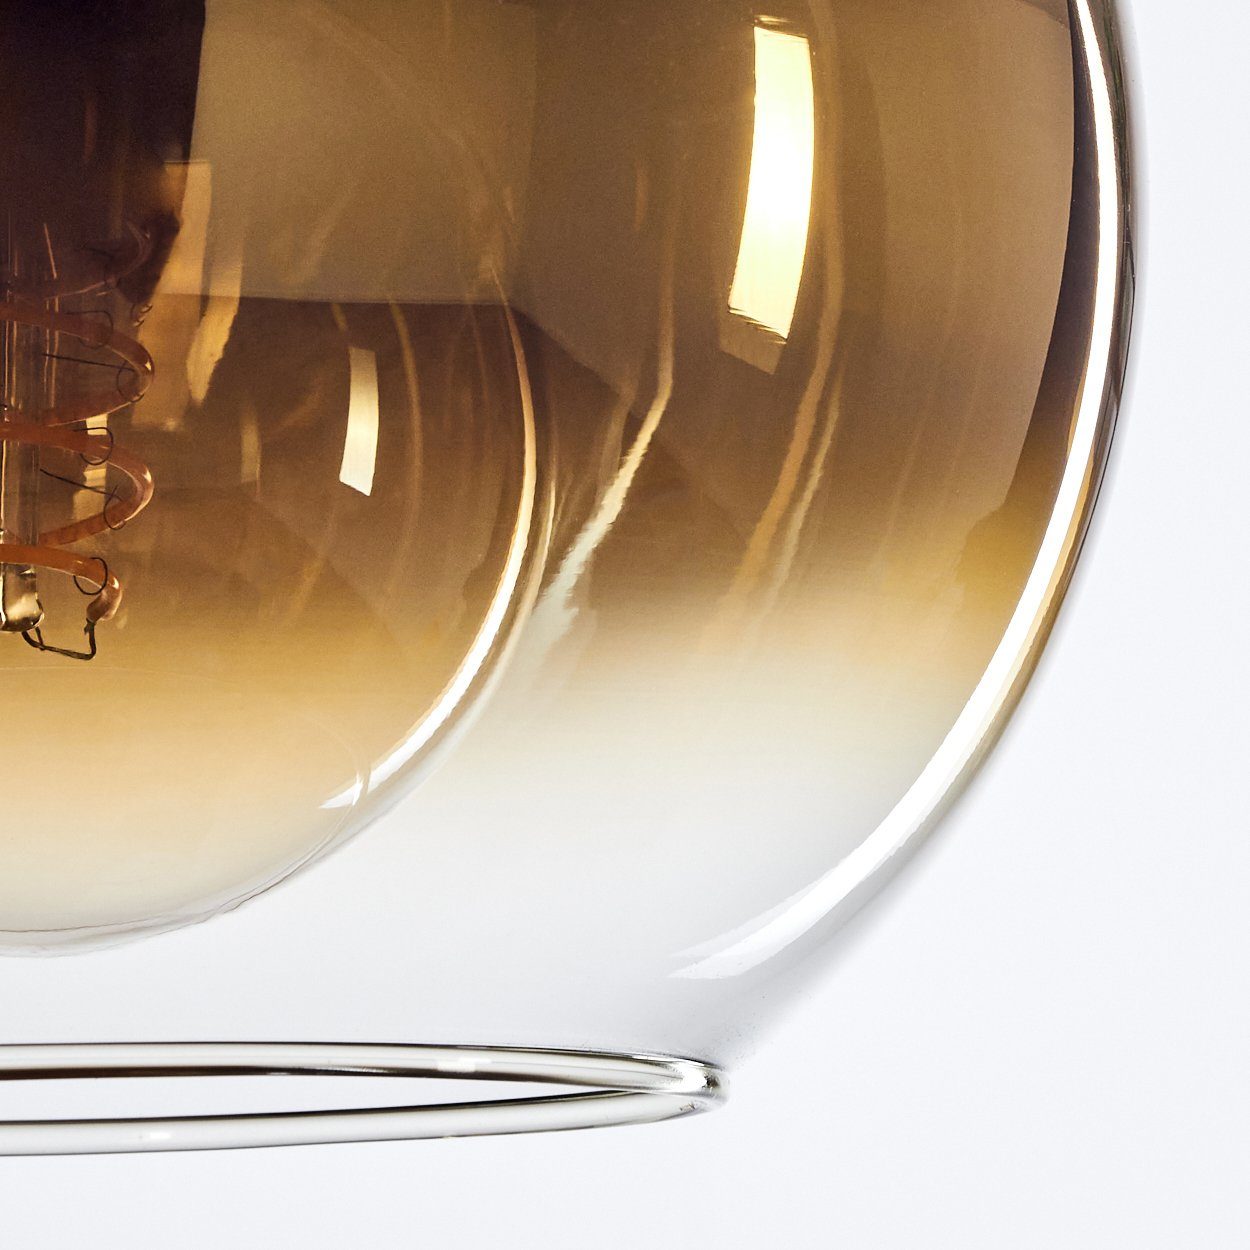 Metall/Glas ohne Design Schirmen Hängelampe (20cm), Vintage/Retro Leuchte »Cesaro« 3xE27 Leuchtmittel, Hängeleuchte aus Schwarz/Goldfarben/Klar, in Glas hofstein mit im aus